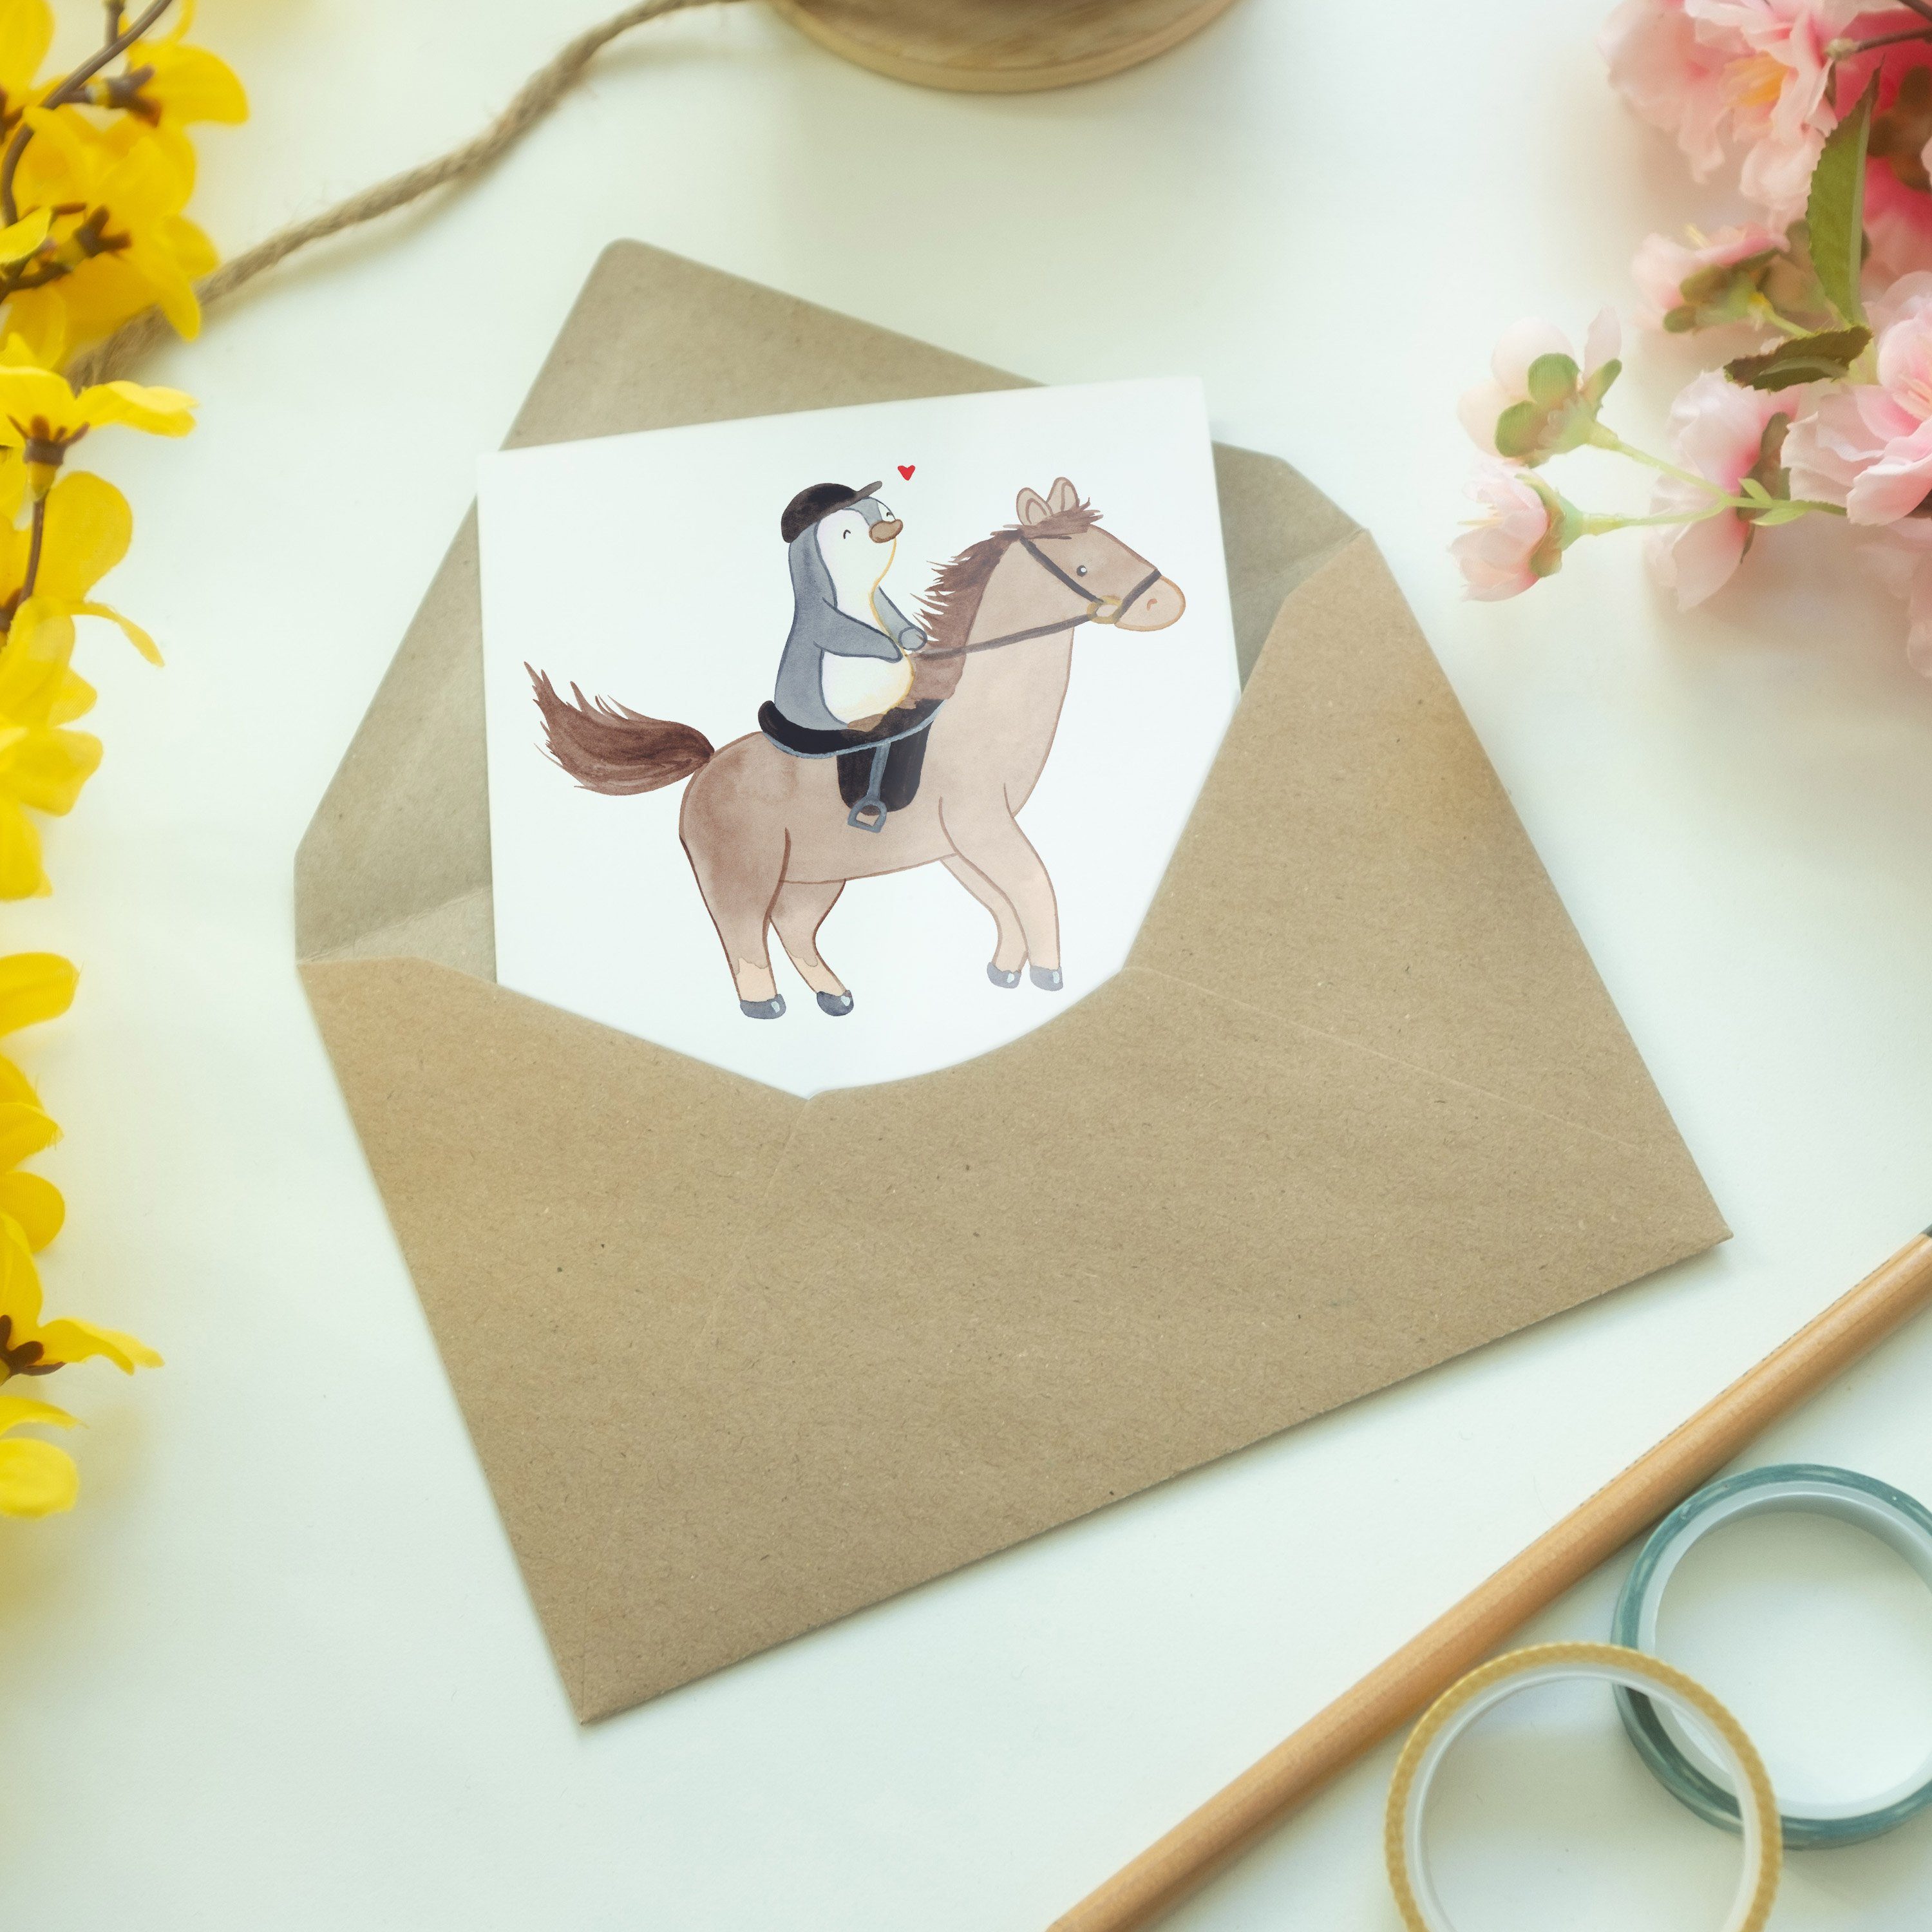 Mr. & Mrs. Grußkarte Pferd - Reiten Therapeutisch Geschenk, Hochzeitskarte, - Panda Weiß Medizin